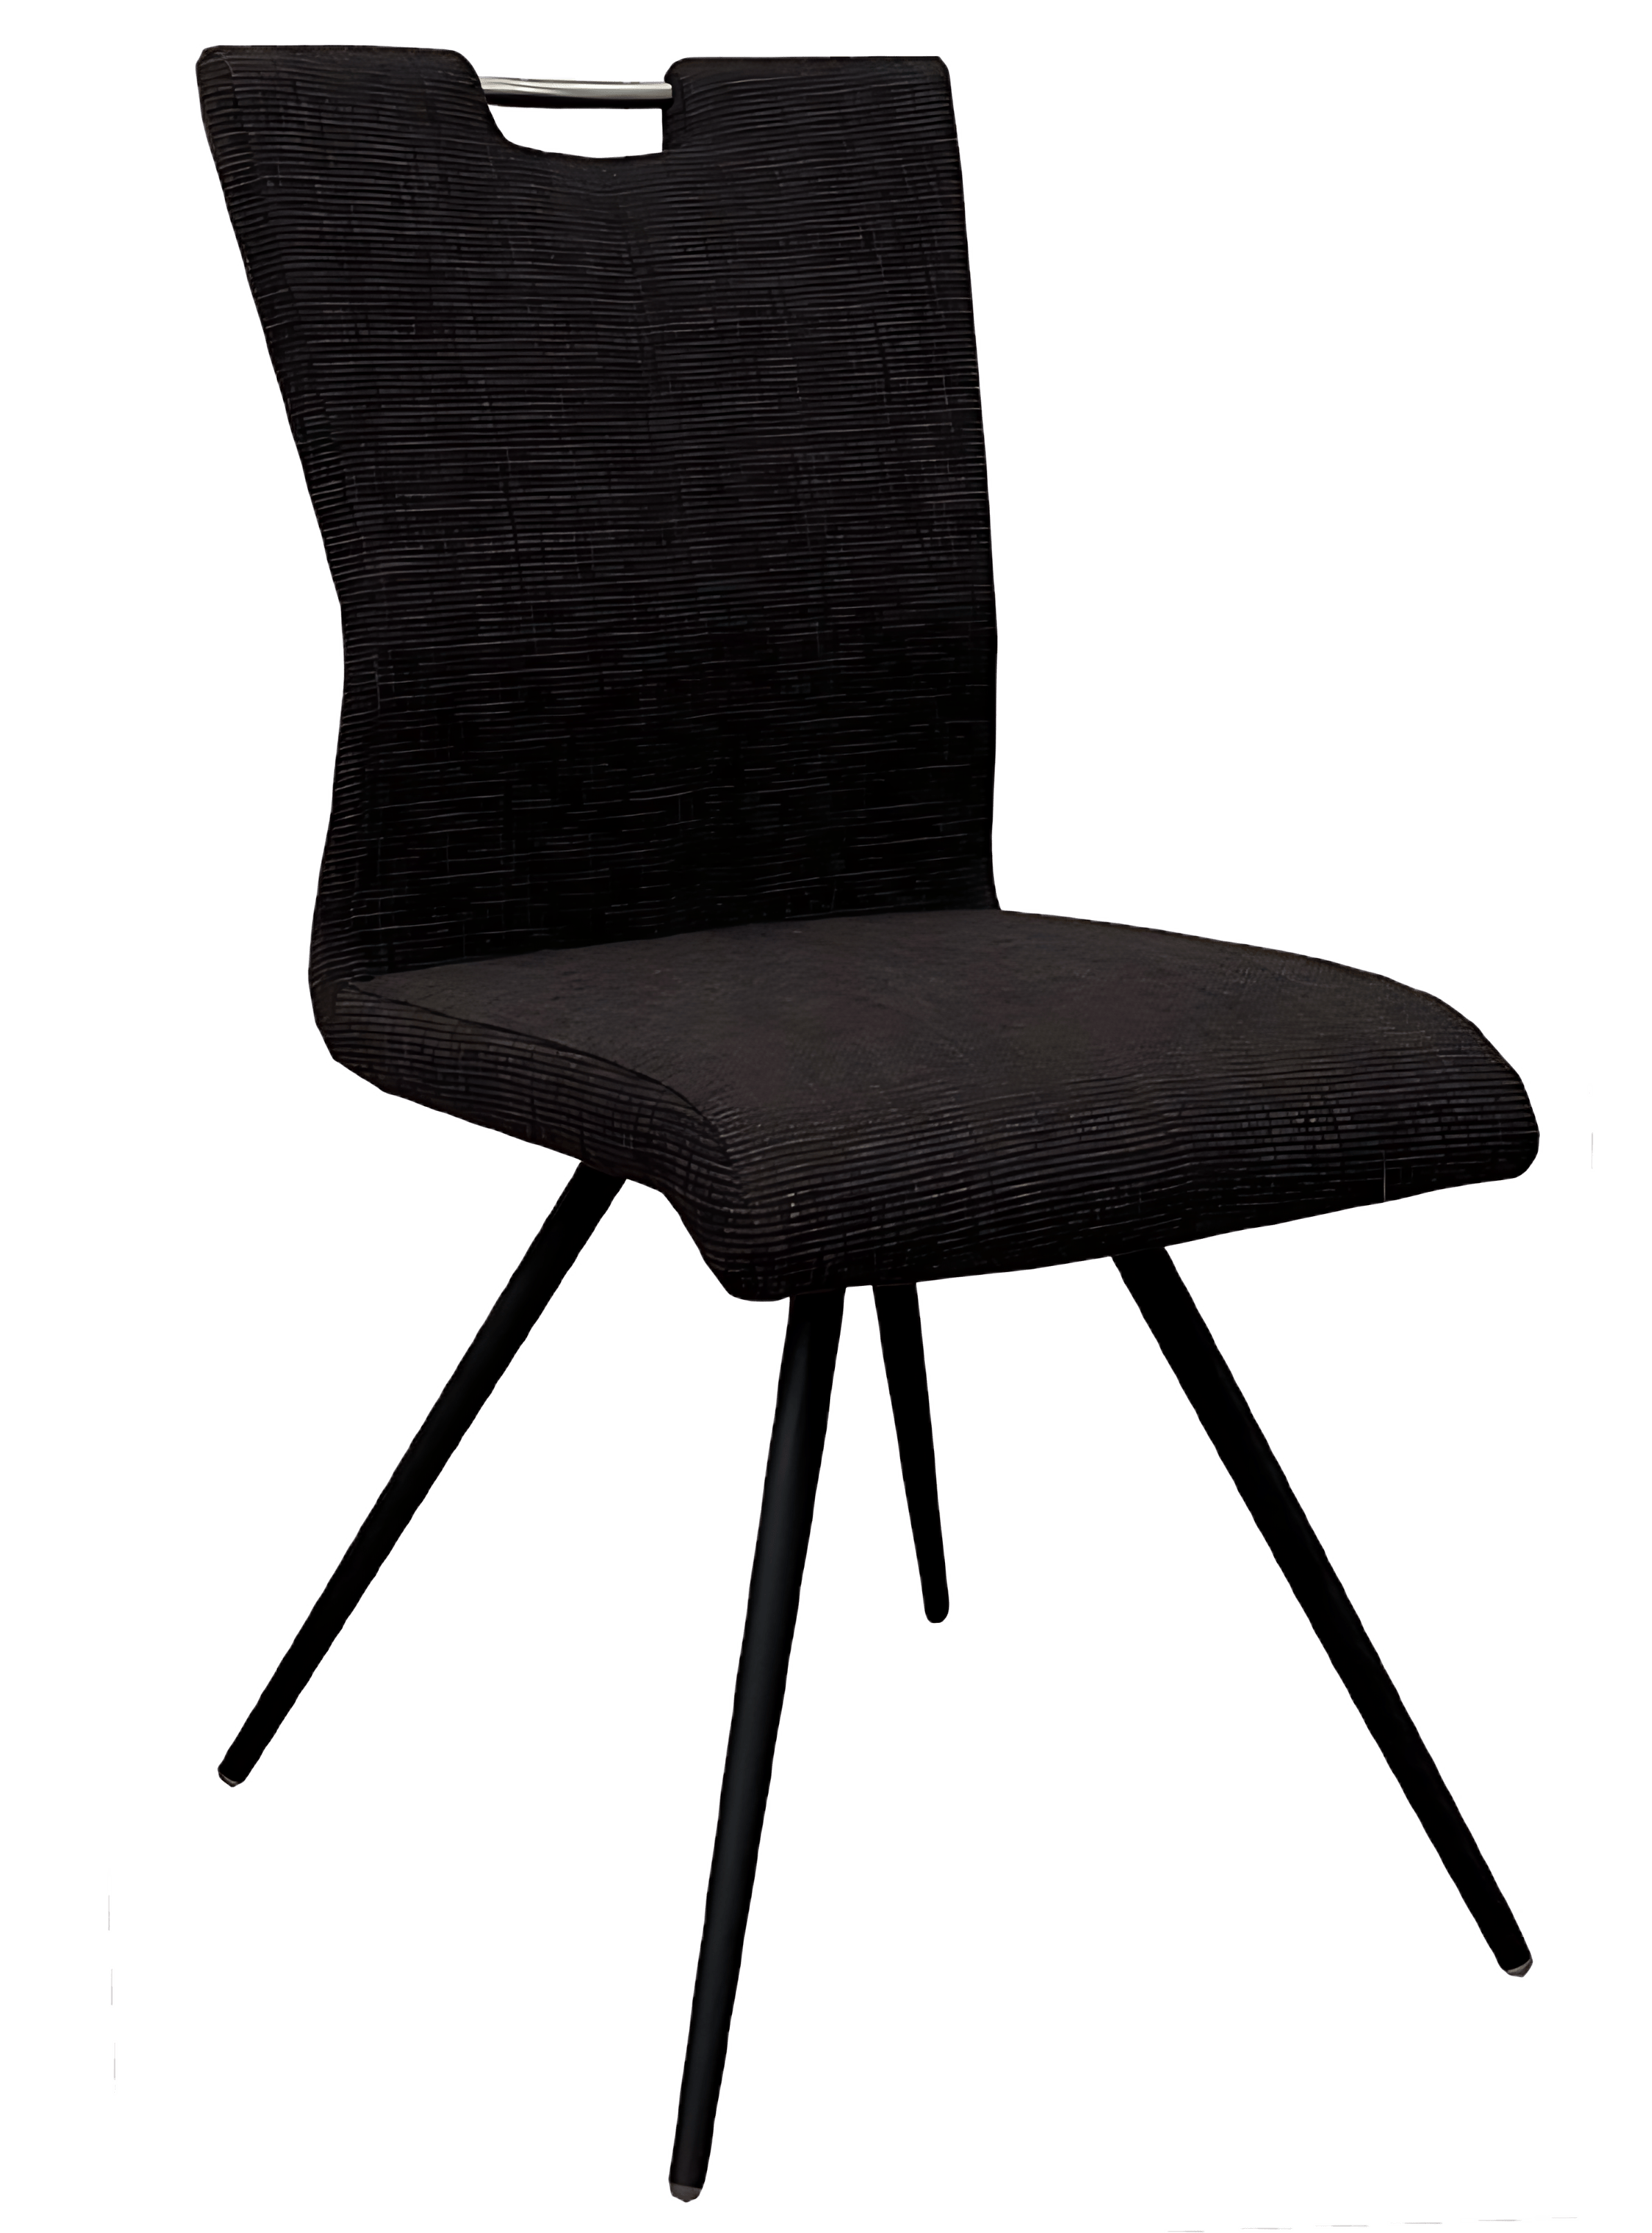 Möbelhaus Groenewold Aktion: Stuhl für 99 €